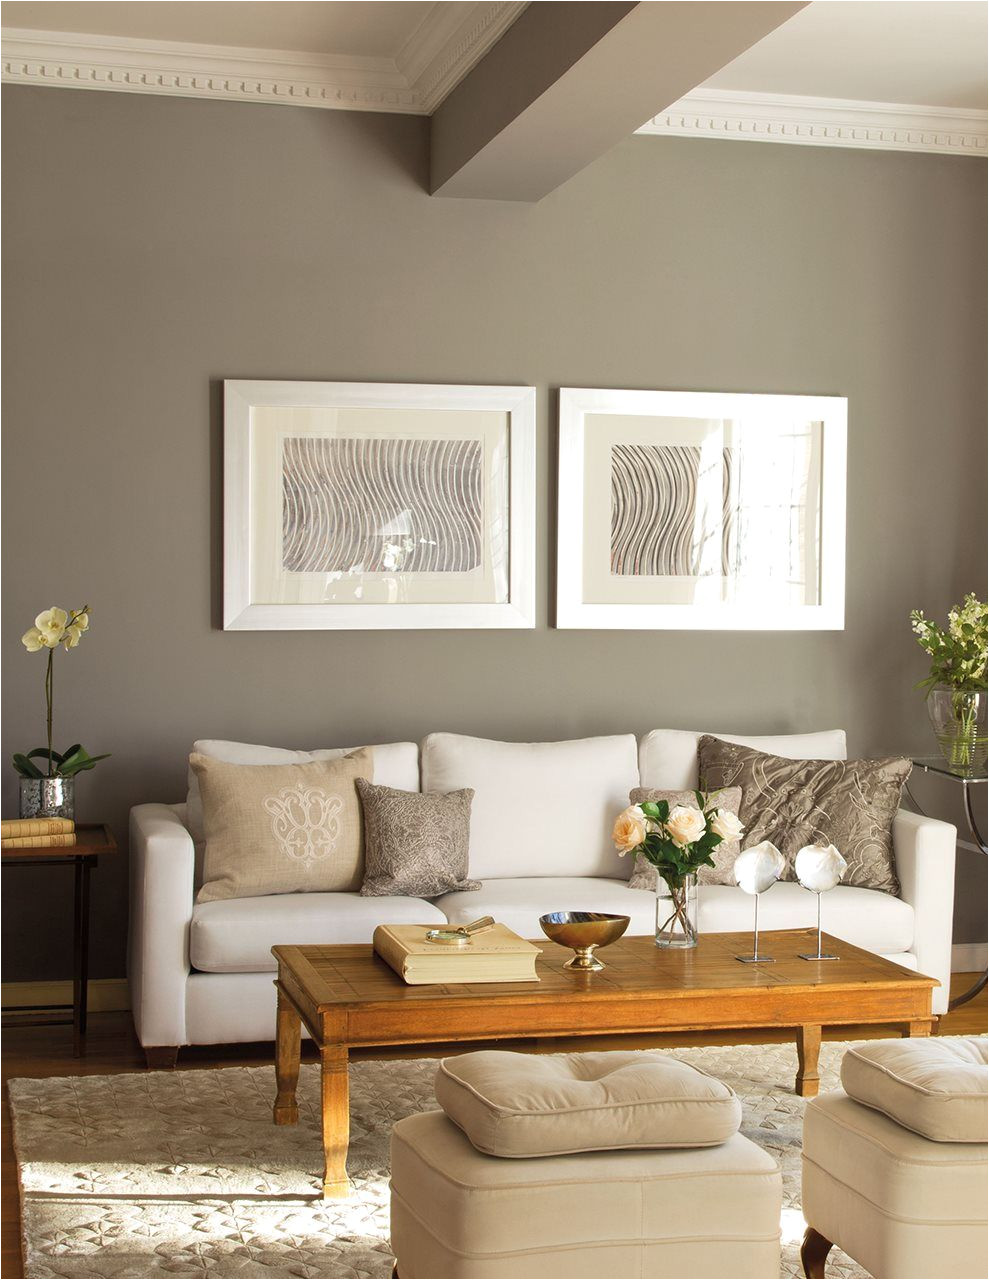 sala n con moldura en el techo pared gris y dos cuadros sobre el sofa dos obras en serie